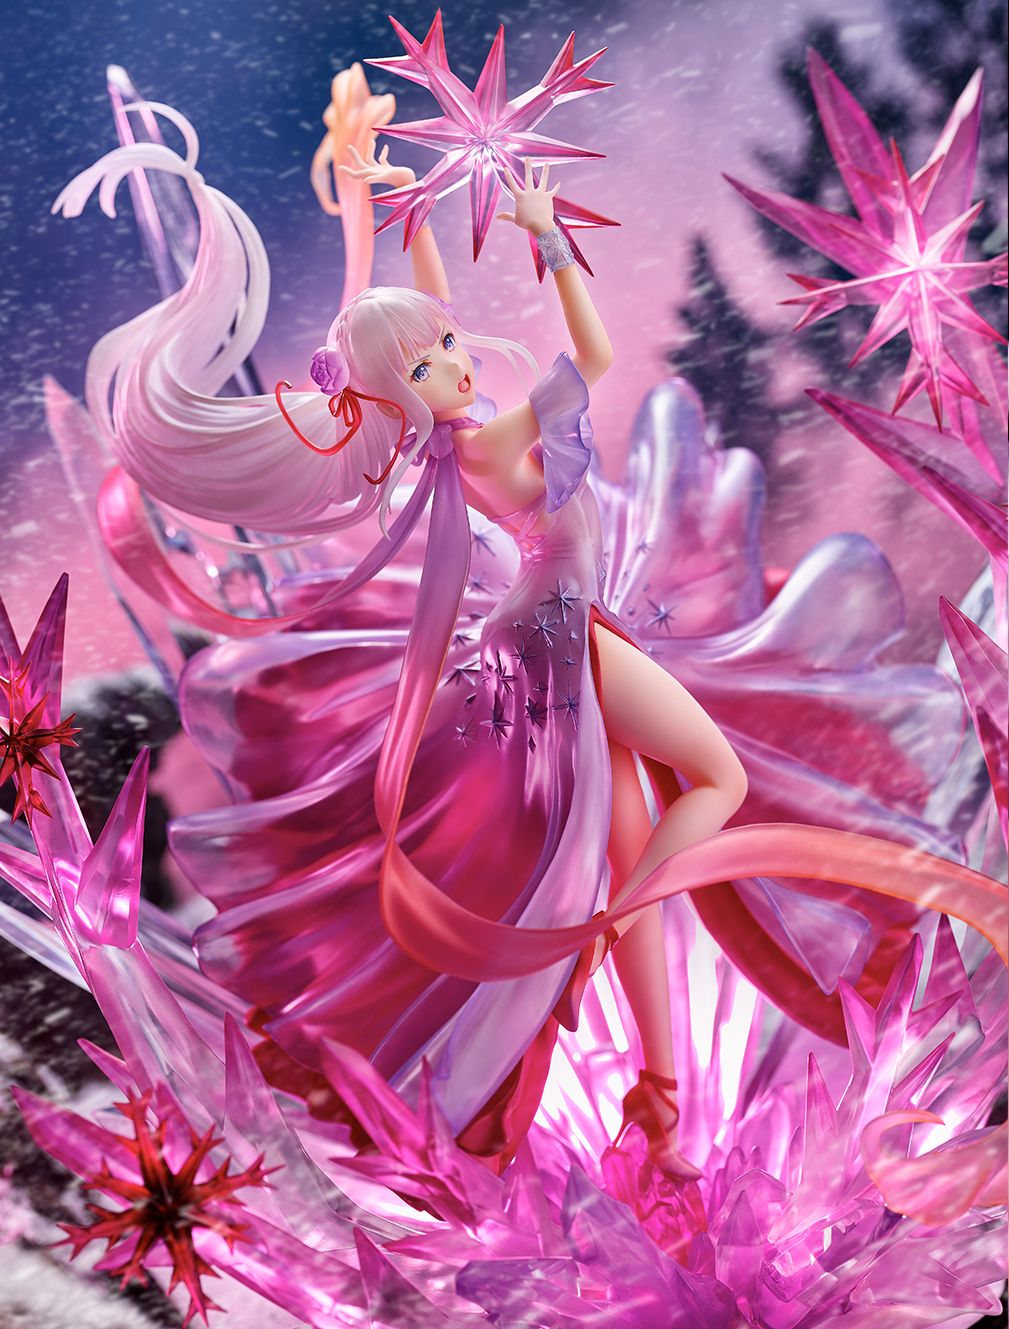 【限定販売】Re:ゼロから始める異世界生活『氷結のエミリア -Crystal Dress Ver-』 1/7 完成品フィギュア-006